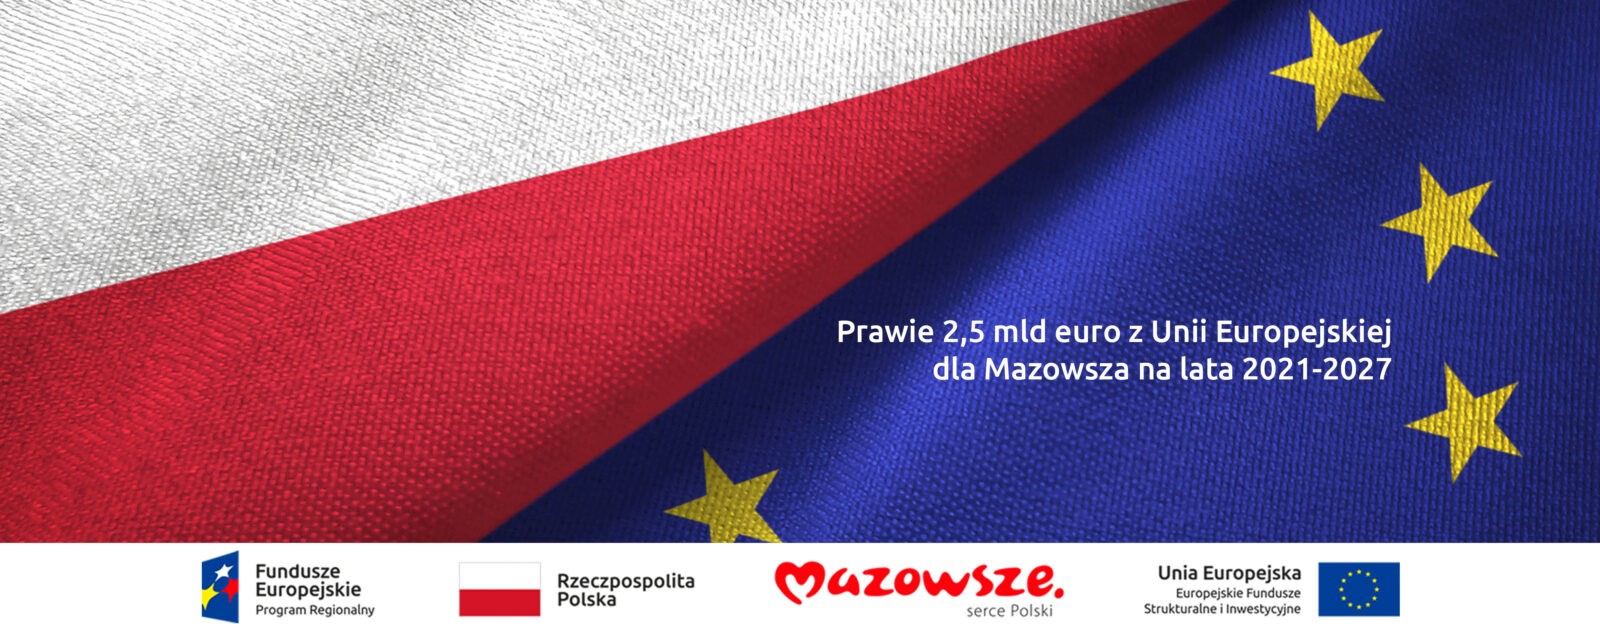 Hasło „Prawie 2,5 mld euro dla Mazowsza z Unii Europejskiej na lata 2021-2027” na tle flag Polski i Unii Europejskiej